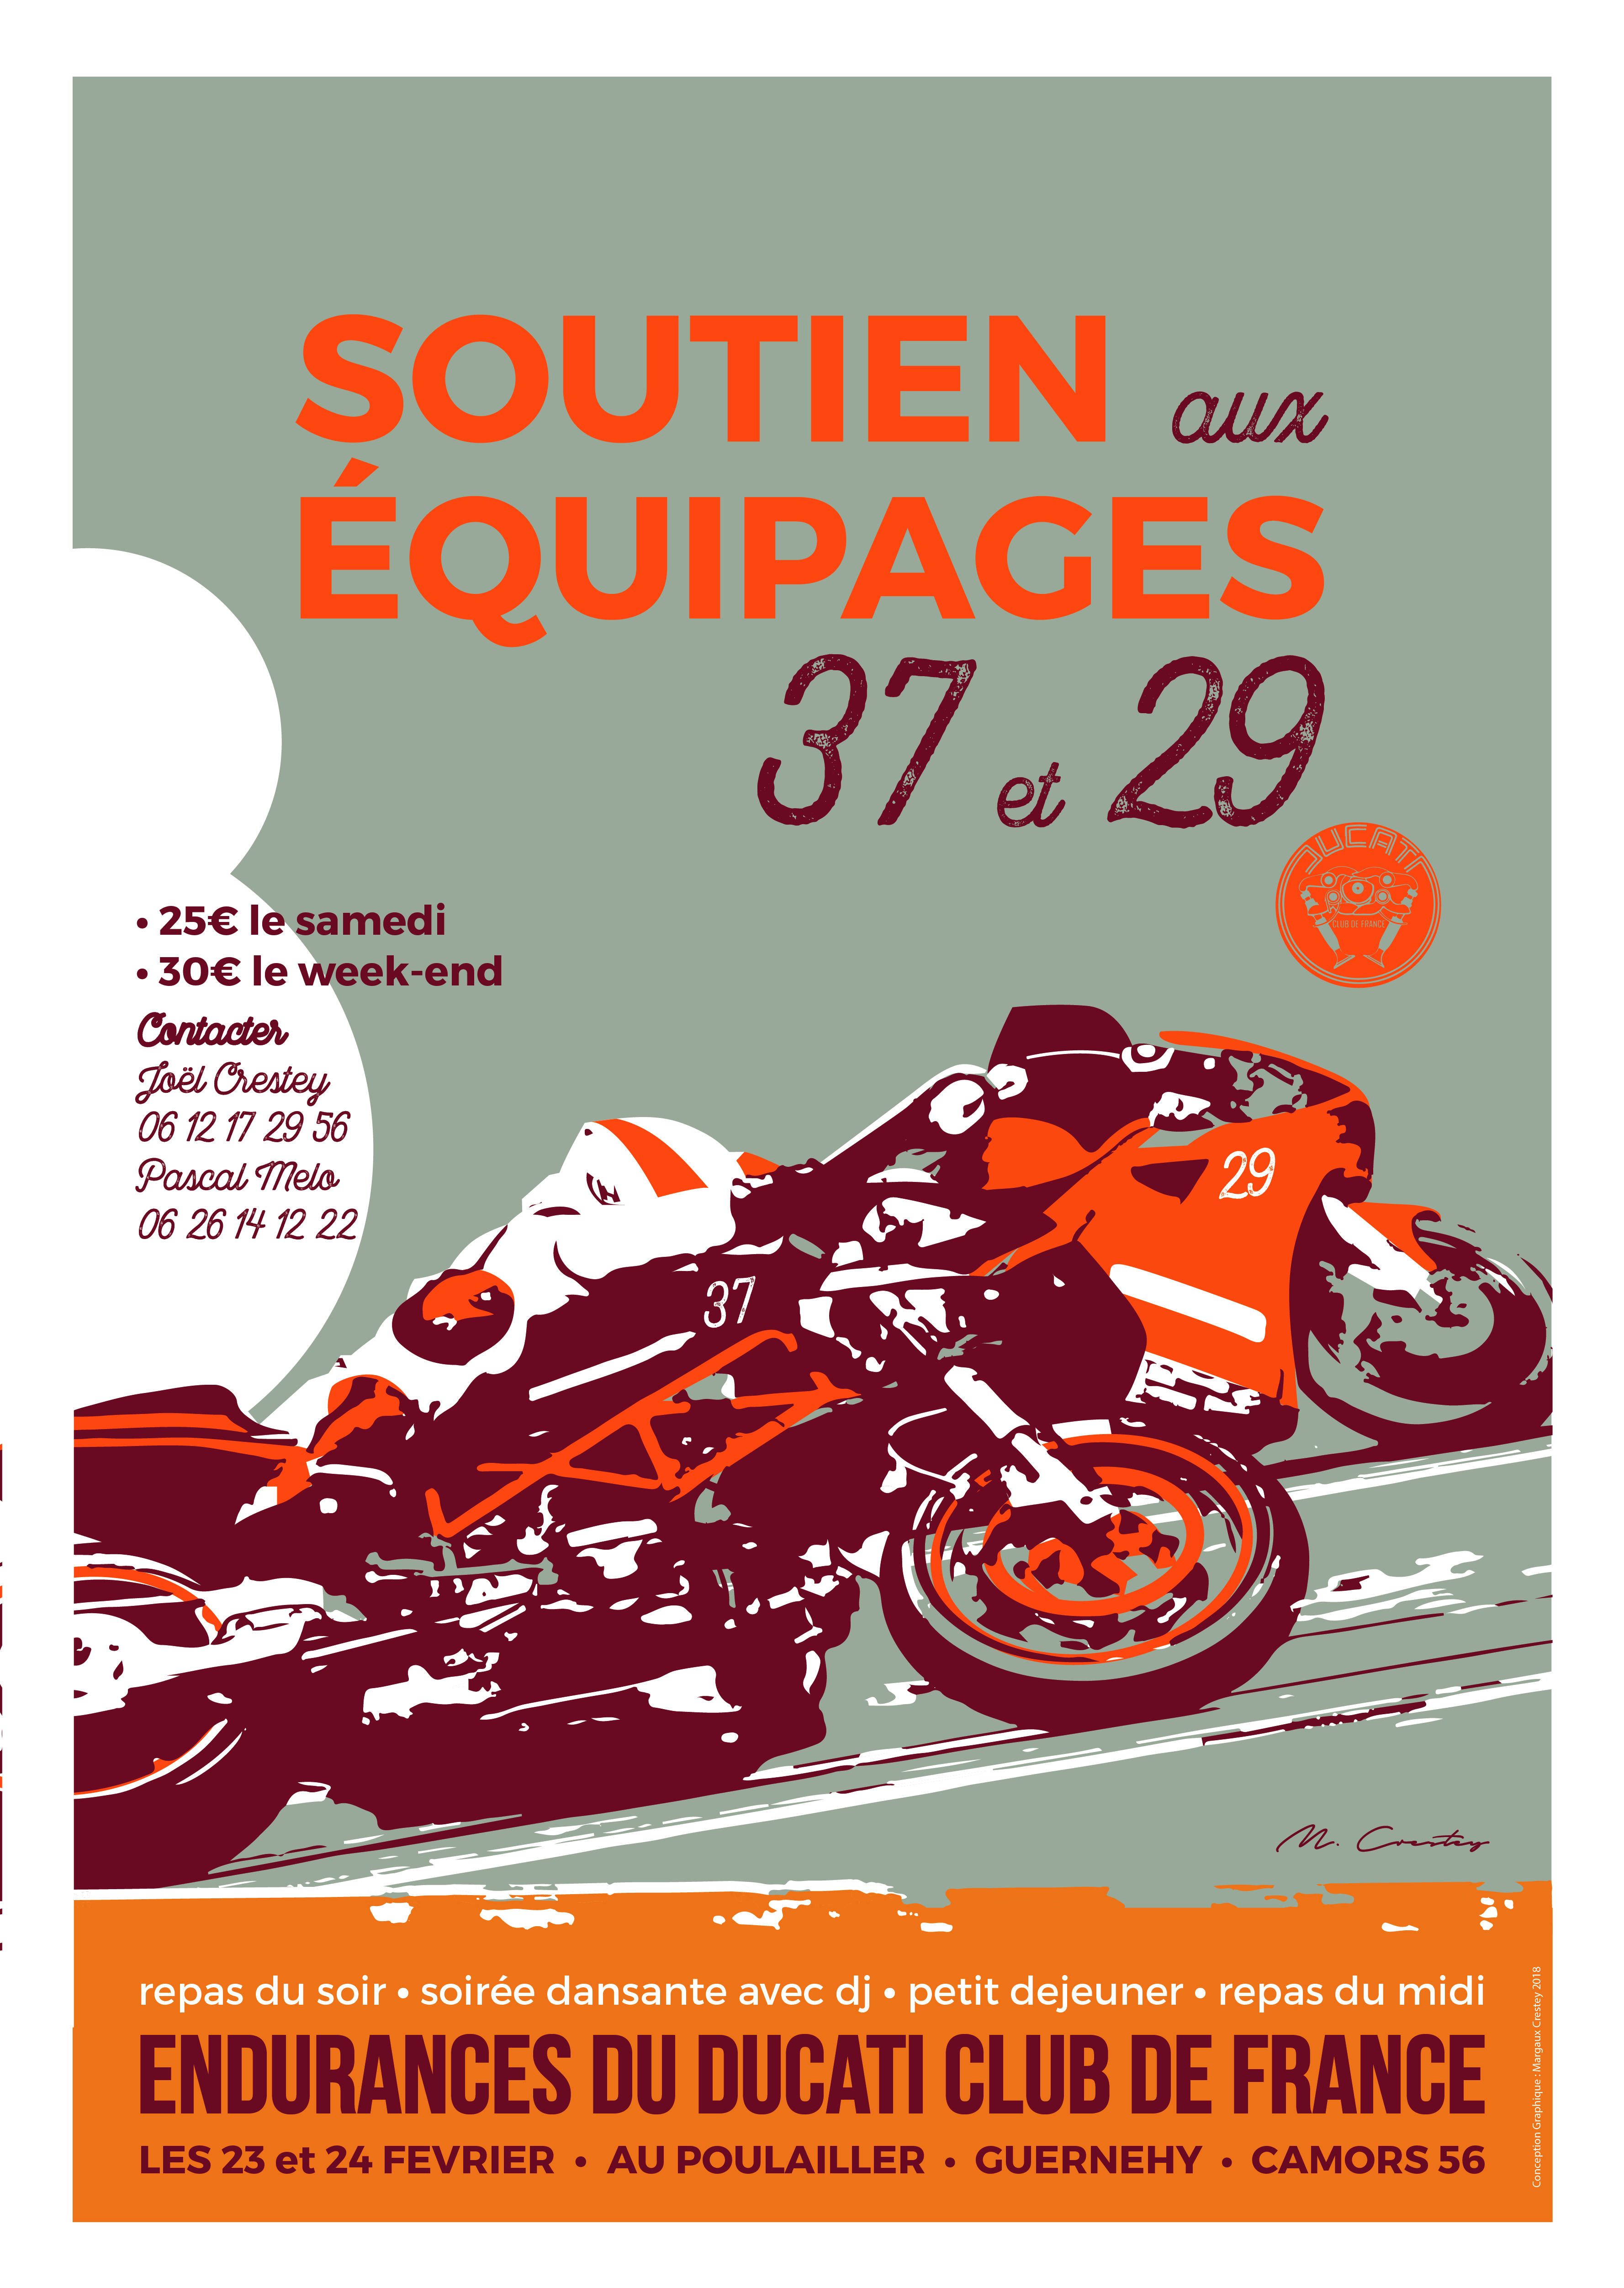 Affiche pour un évènement organisé par le Ducati Club de France. On y voit deux motard à pleine vitesse dans une virage. L'affiche a un aspect retro vintage dans les tons oranges et bleux